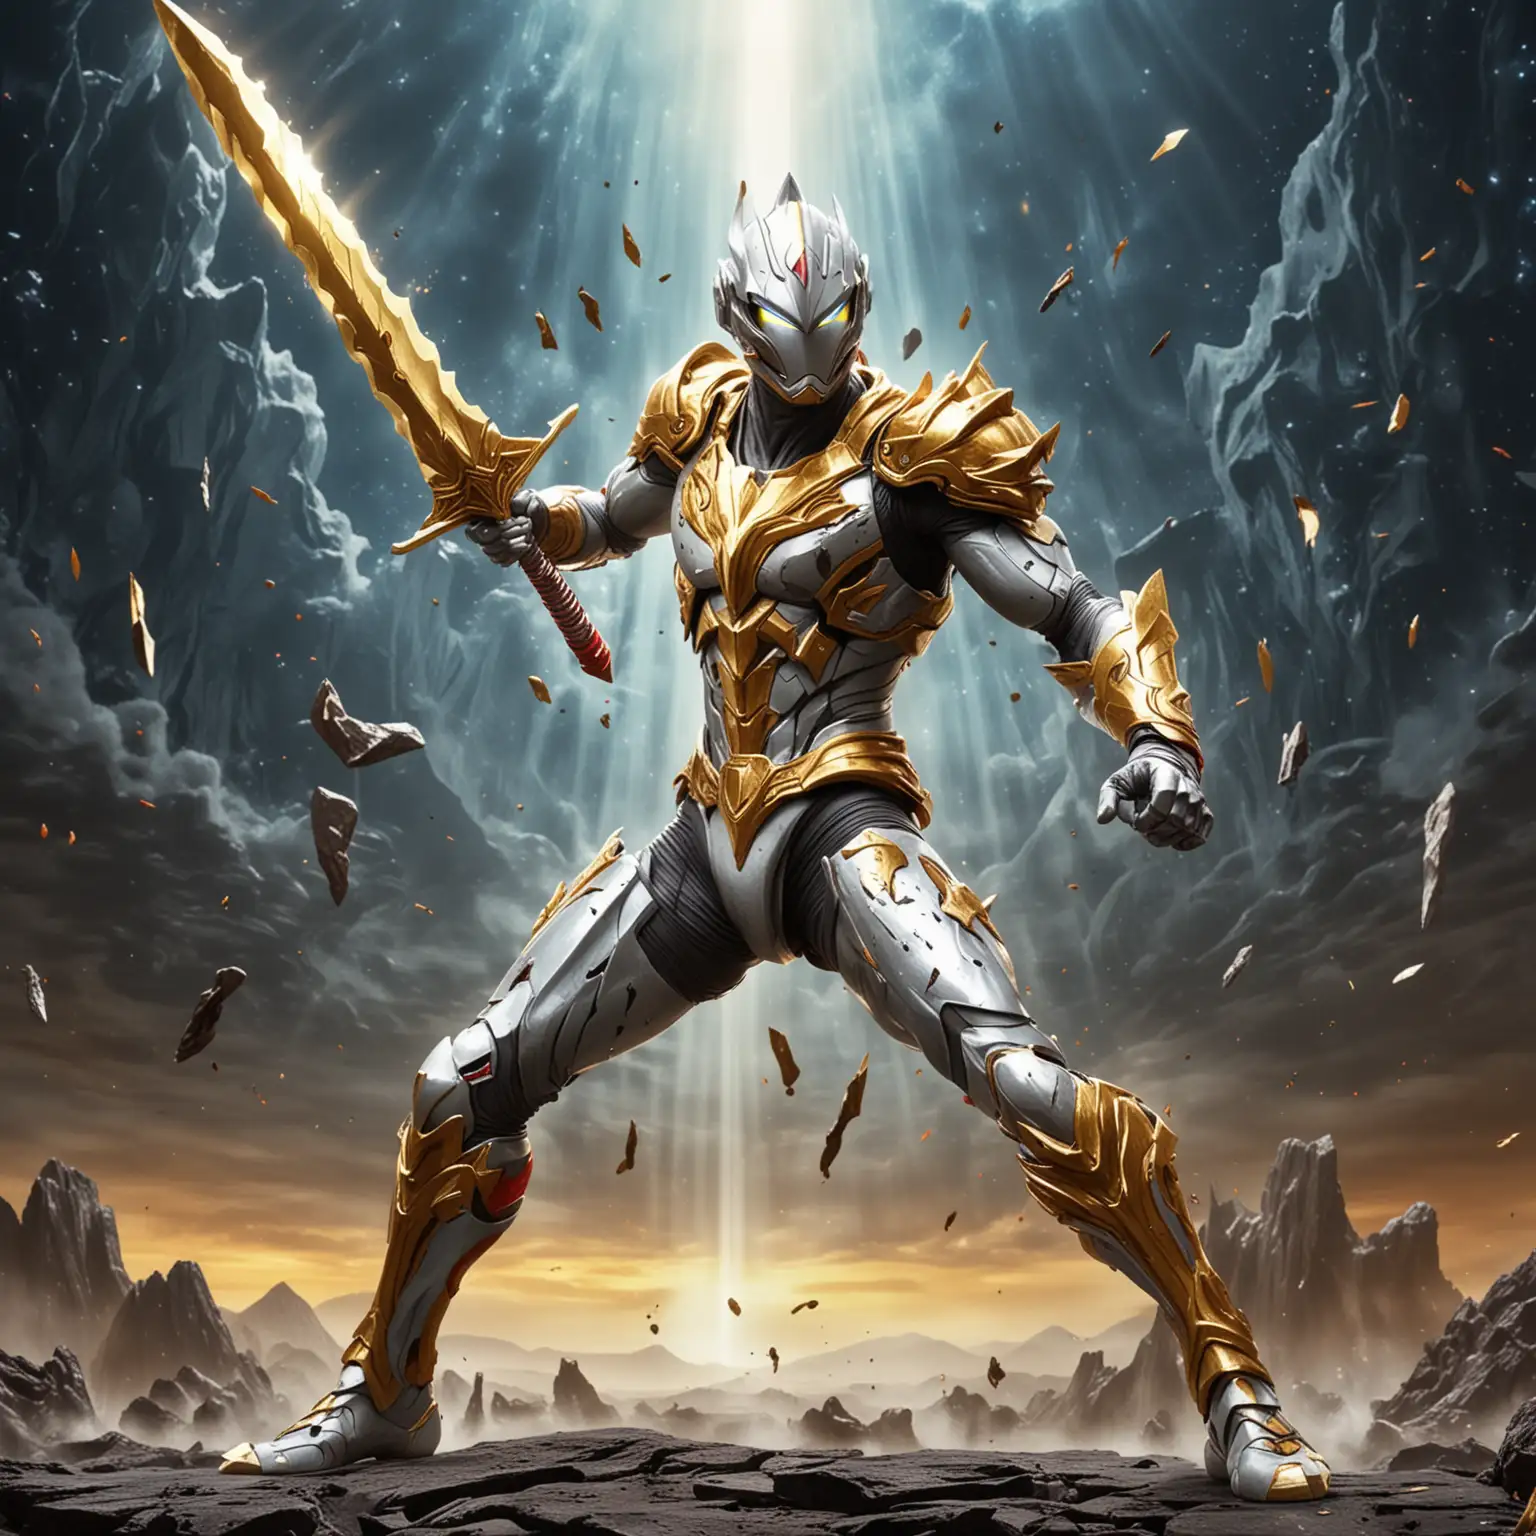 cartoon animation Ultraman wielding golden sword chopping monster background space